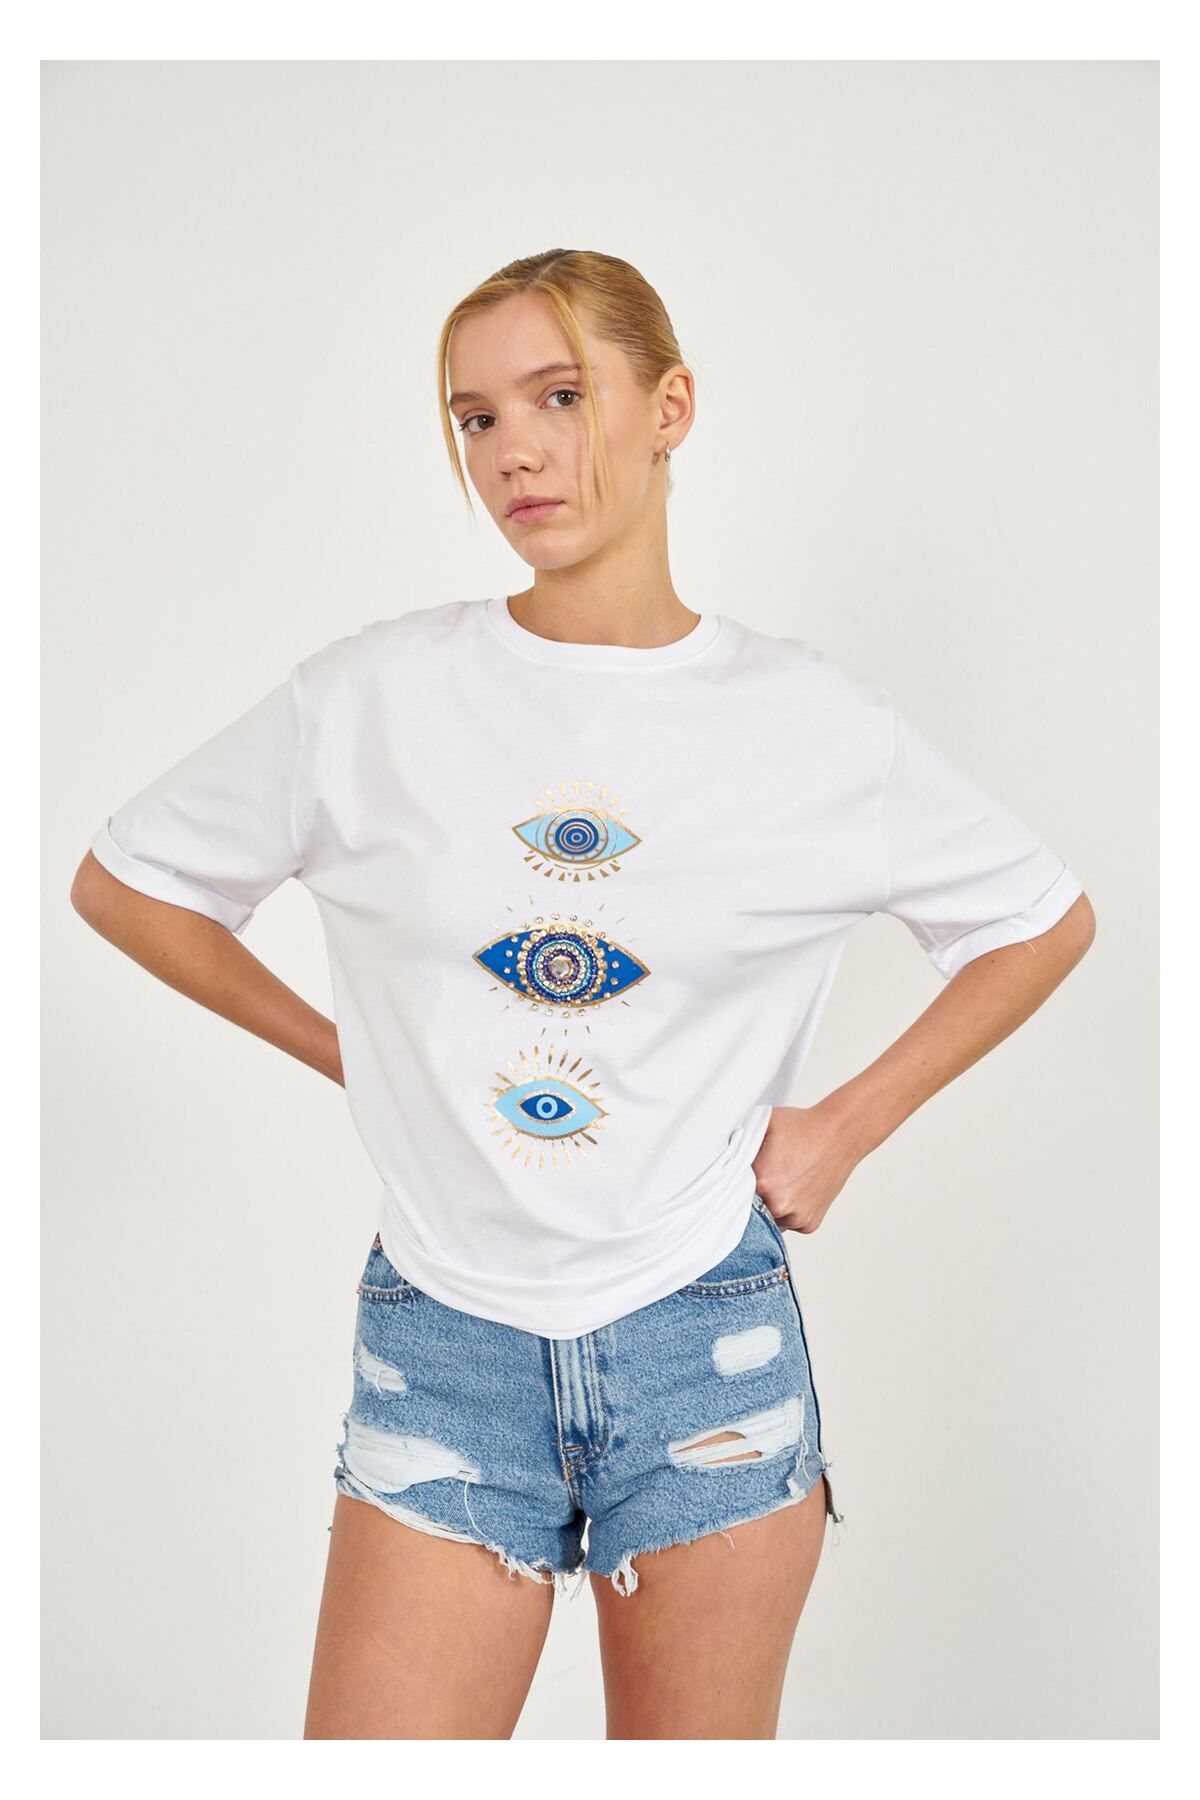 Tiffany Tomato Taşlı Göz Baskılı T-shirt-Ekru